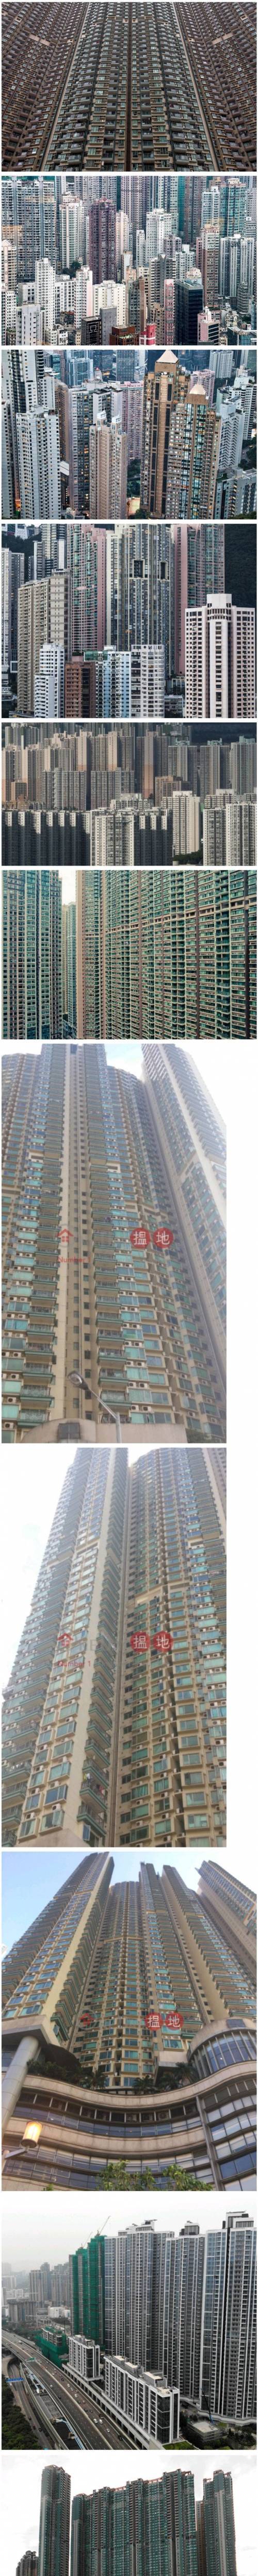 [스압] 용적률 500~1500% 의 홍콩 아파트들.jpg